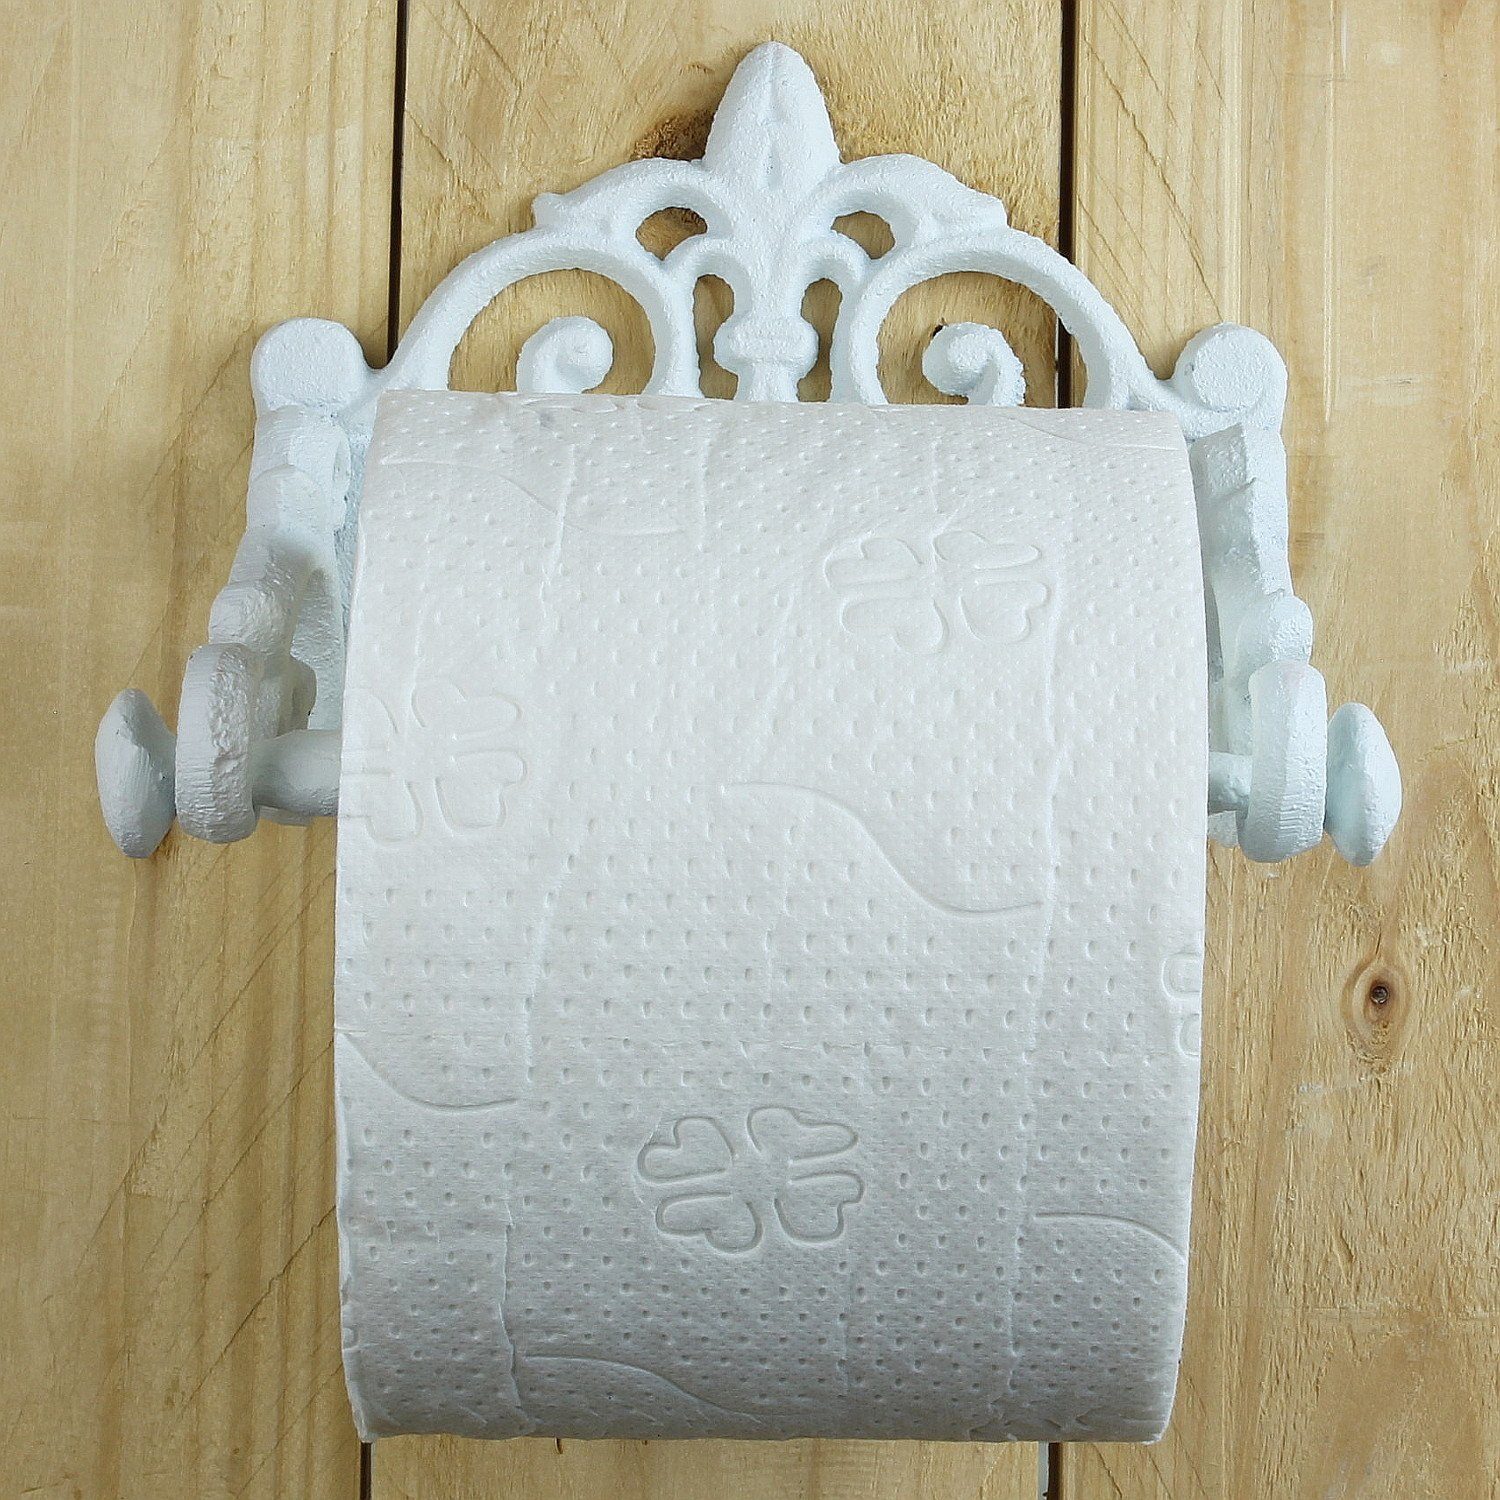 Nostalgie Toilettenpapierhalter Klorollenhalter Gußeisen Antiklook Weiß 18cm Neu 